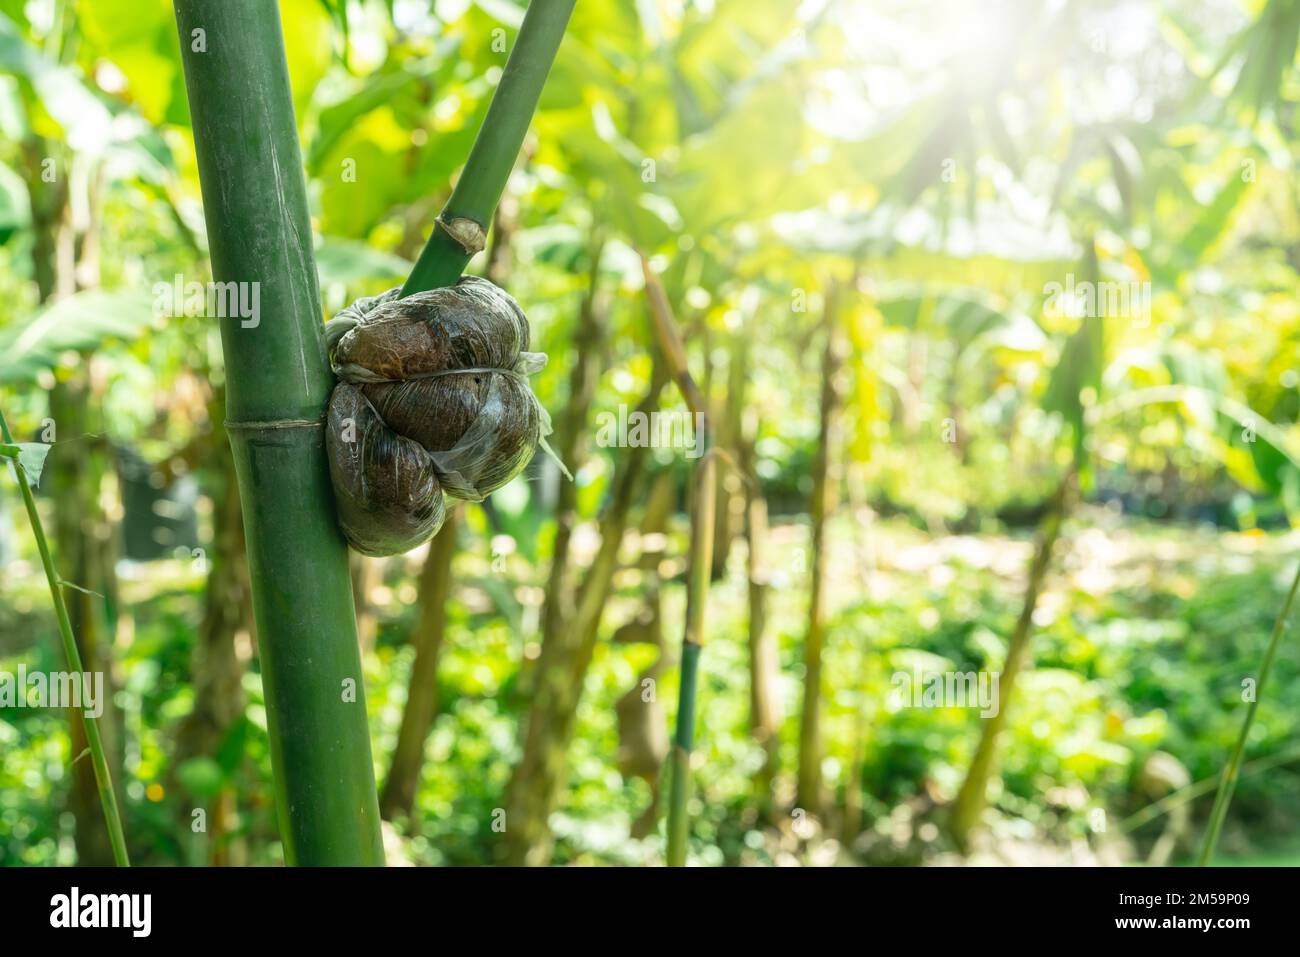 Luft, die einen Bambuszweig in einem Bio-Garten überlagert. Bambuspflanzenvermehrung mit Luftschichten. Ökologischer Landwirtschaftsbetrieb. Bambusvermehrung. Bambus mit Stockfoto